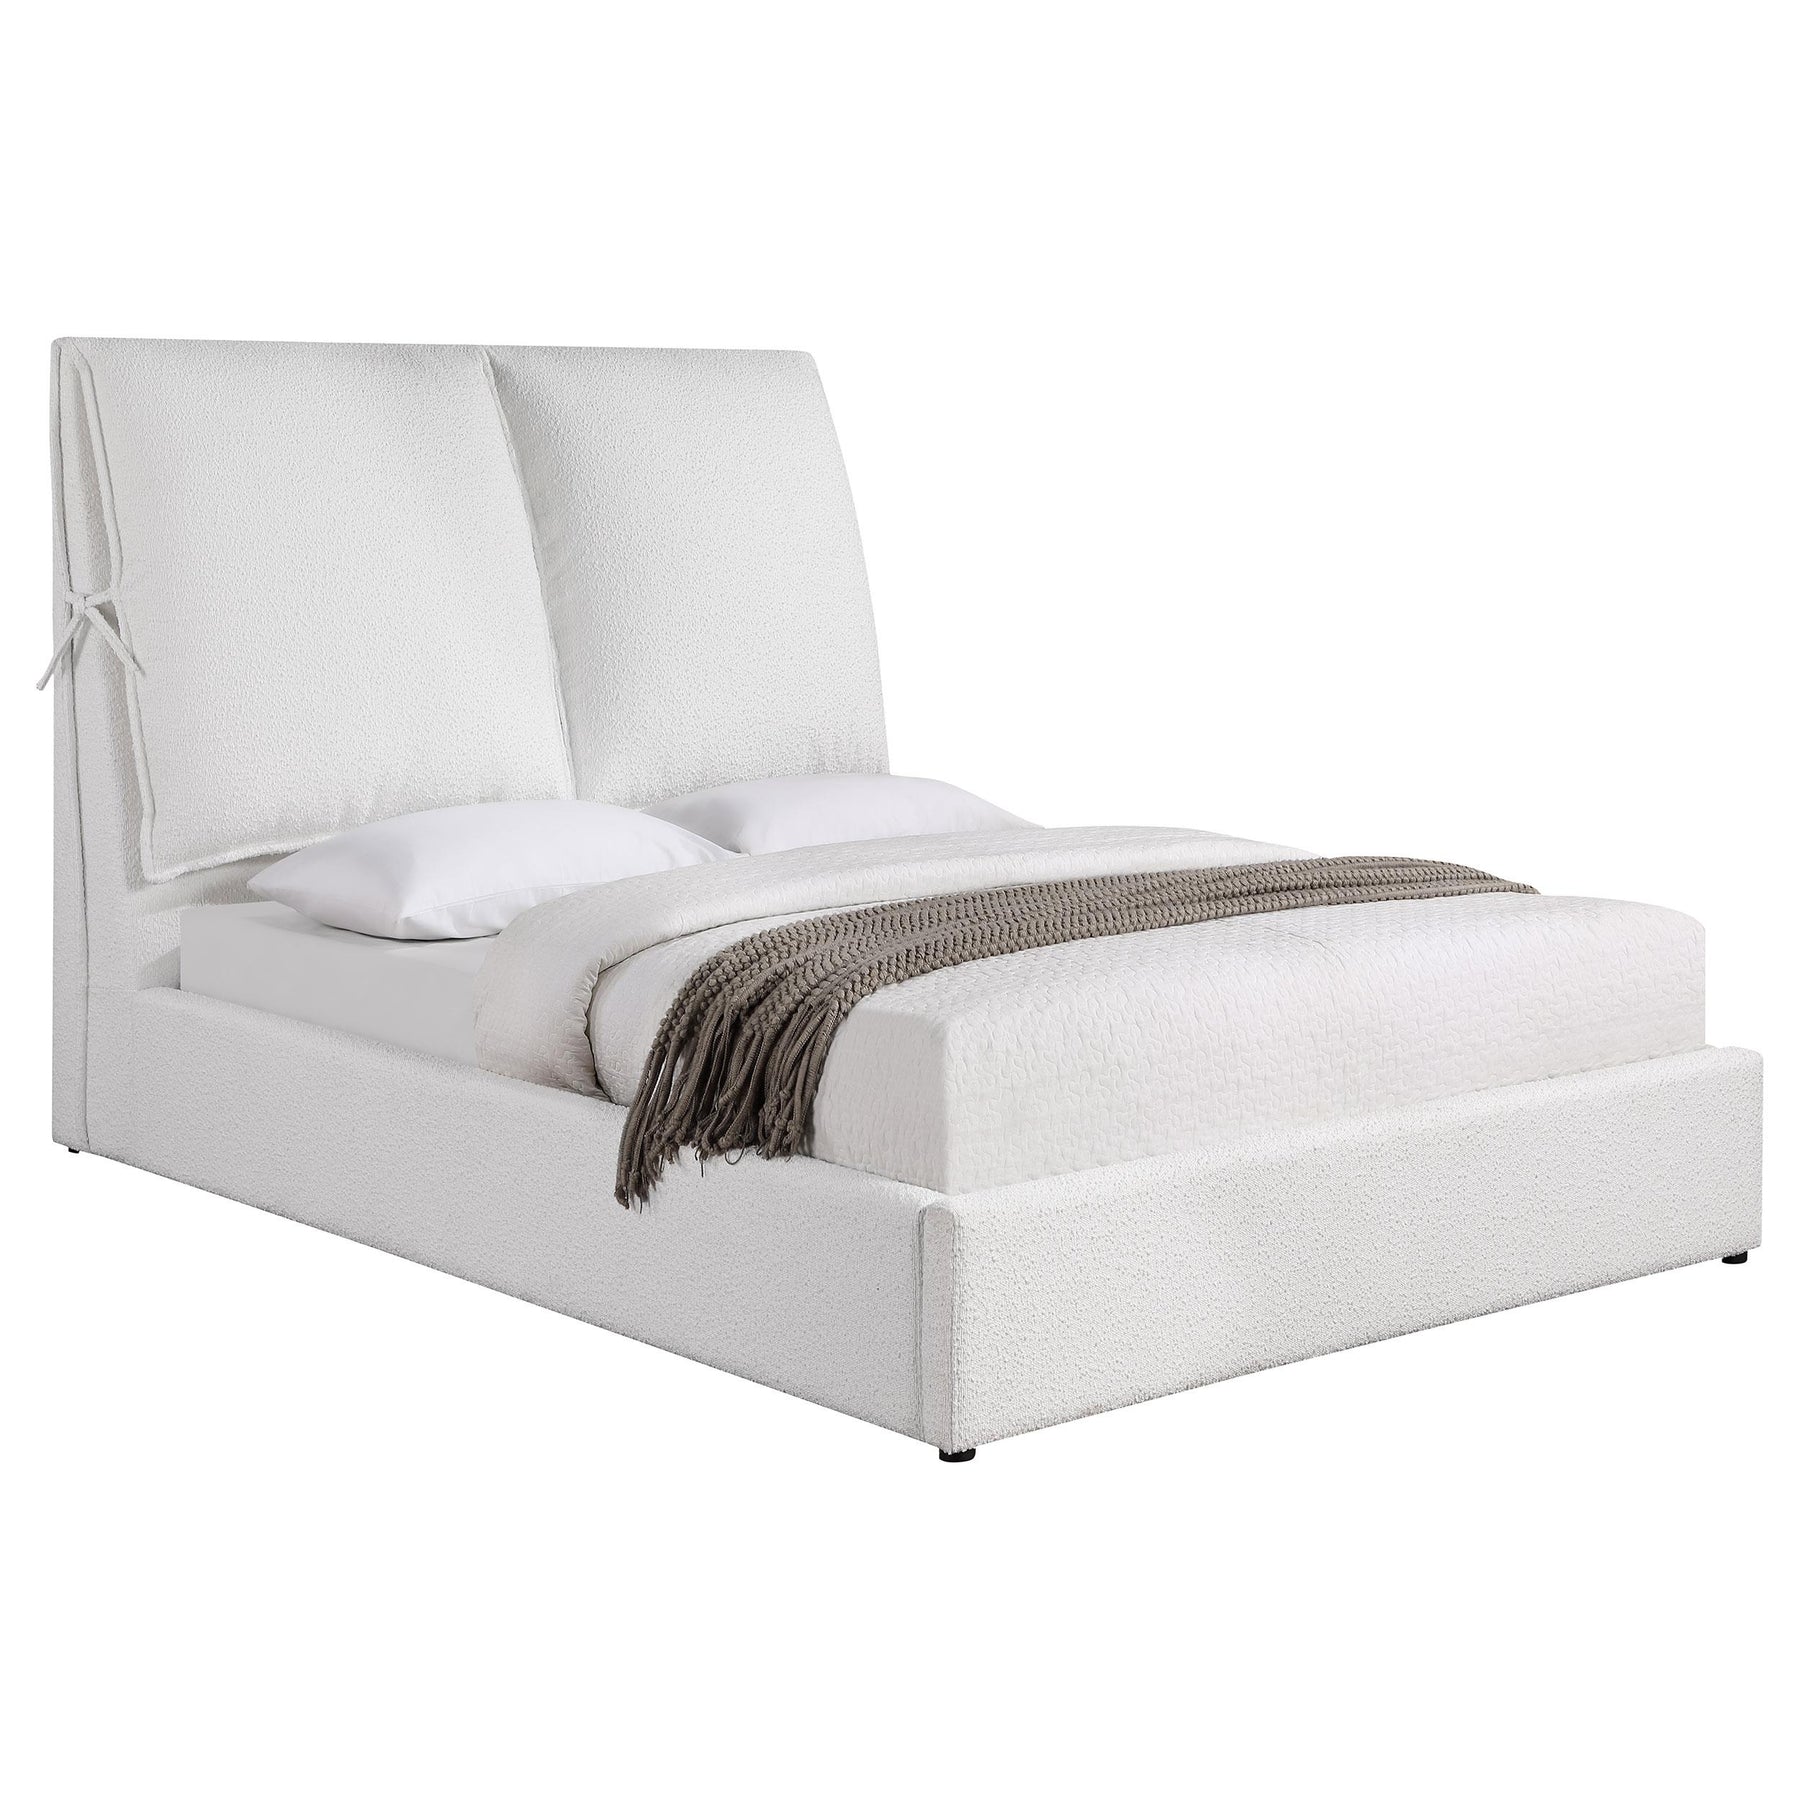 Gwendoline Upholstered Platform Bed with Pillow Headboard White Gwendoline Upholstered Platform Bed with Pillow Headboard White Half Price Furniture